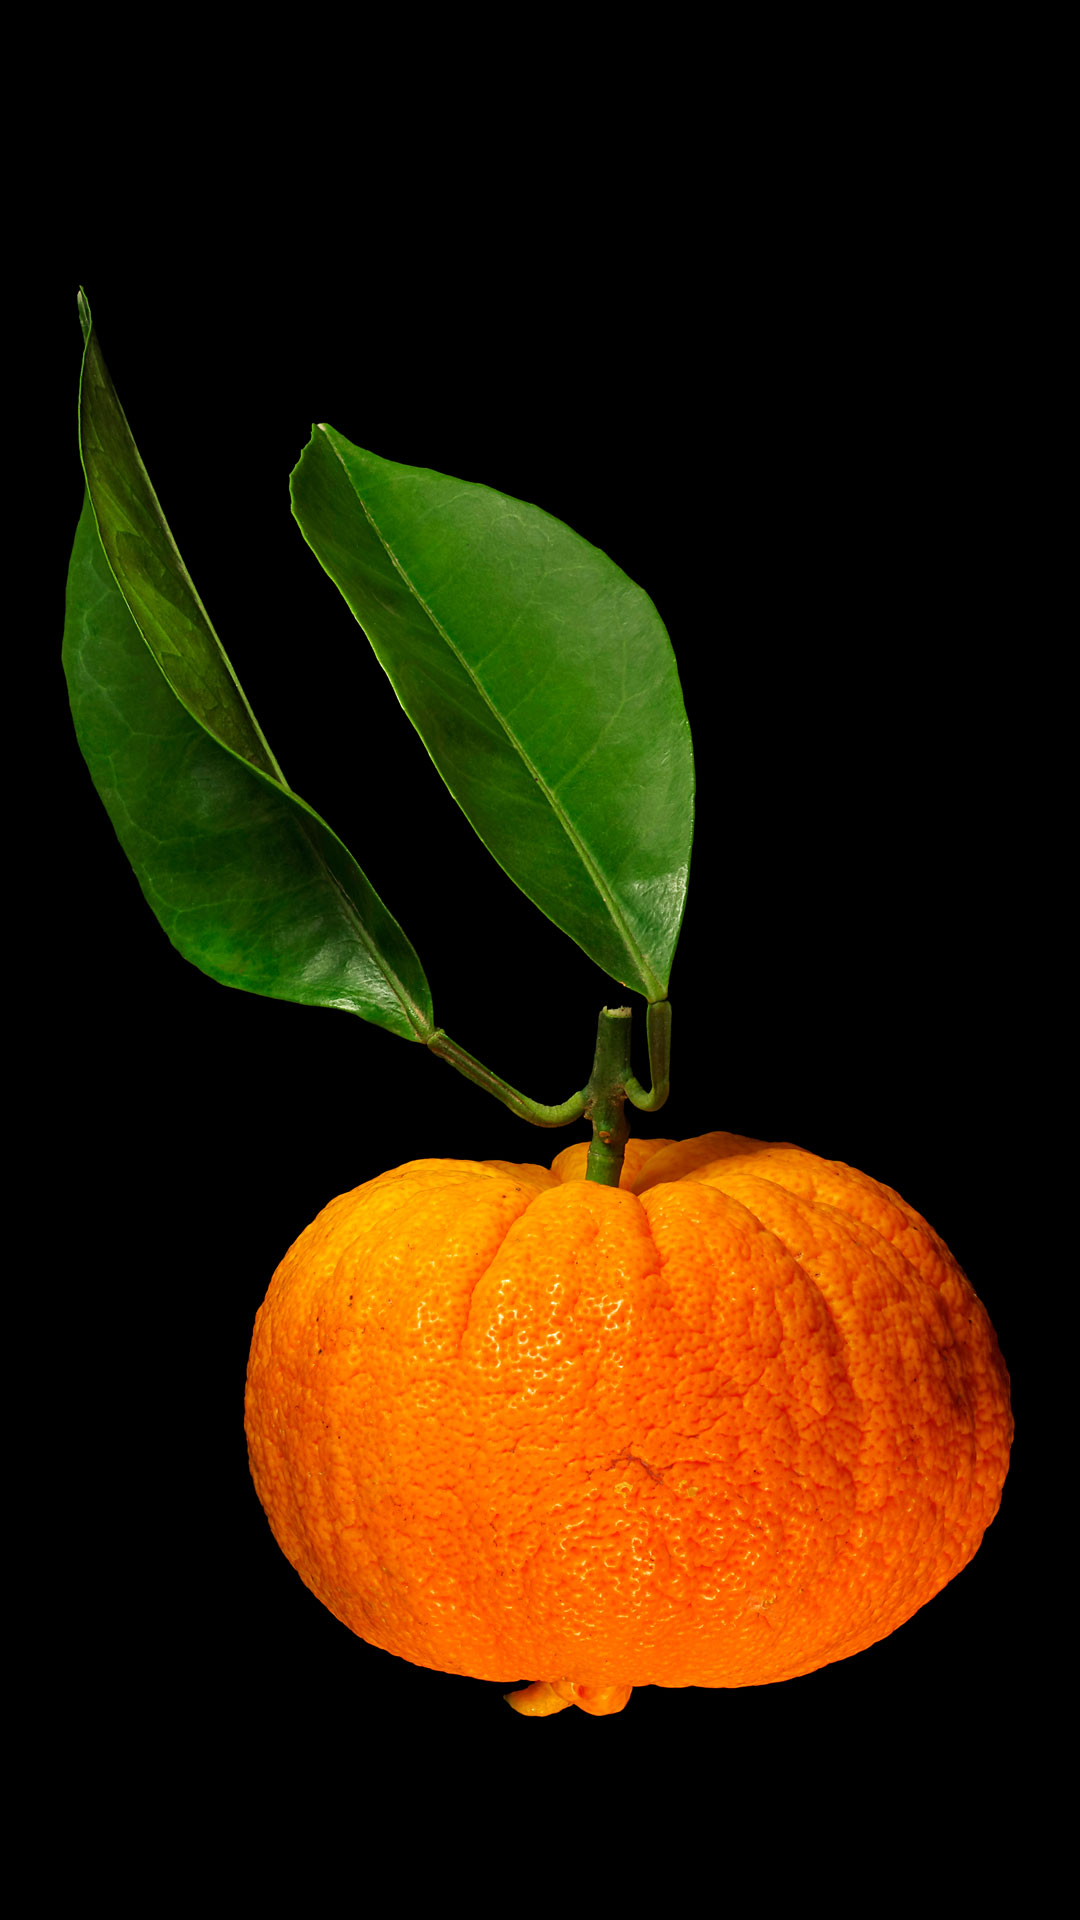 Die Tochterfrüchtige Pomeranze: Citrus × aurantium ‚Foetifera‘